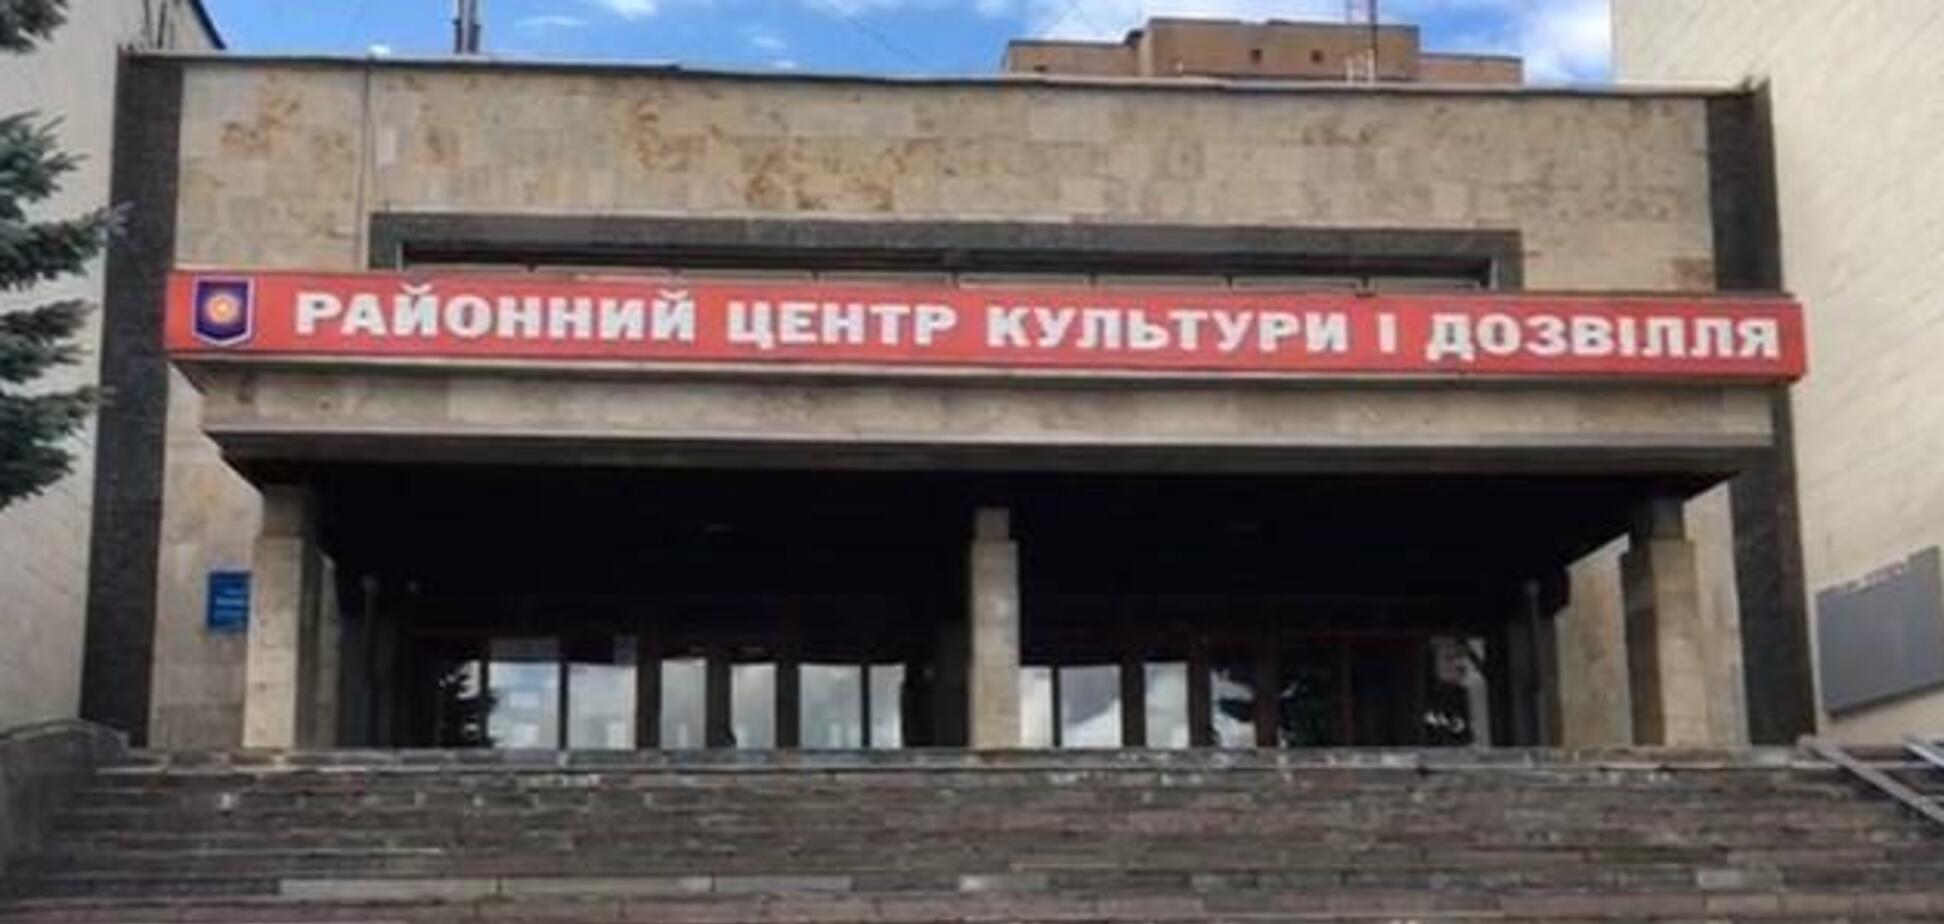 Под Киевом избирательная комиссия считала голоса в кафе